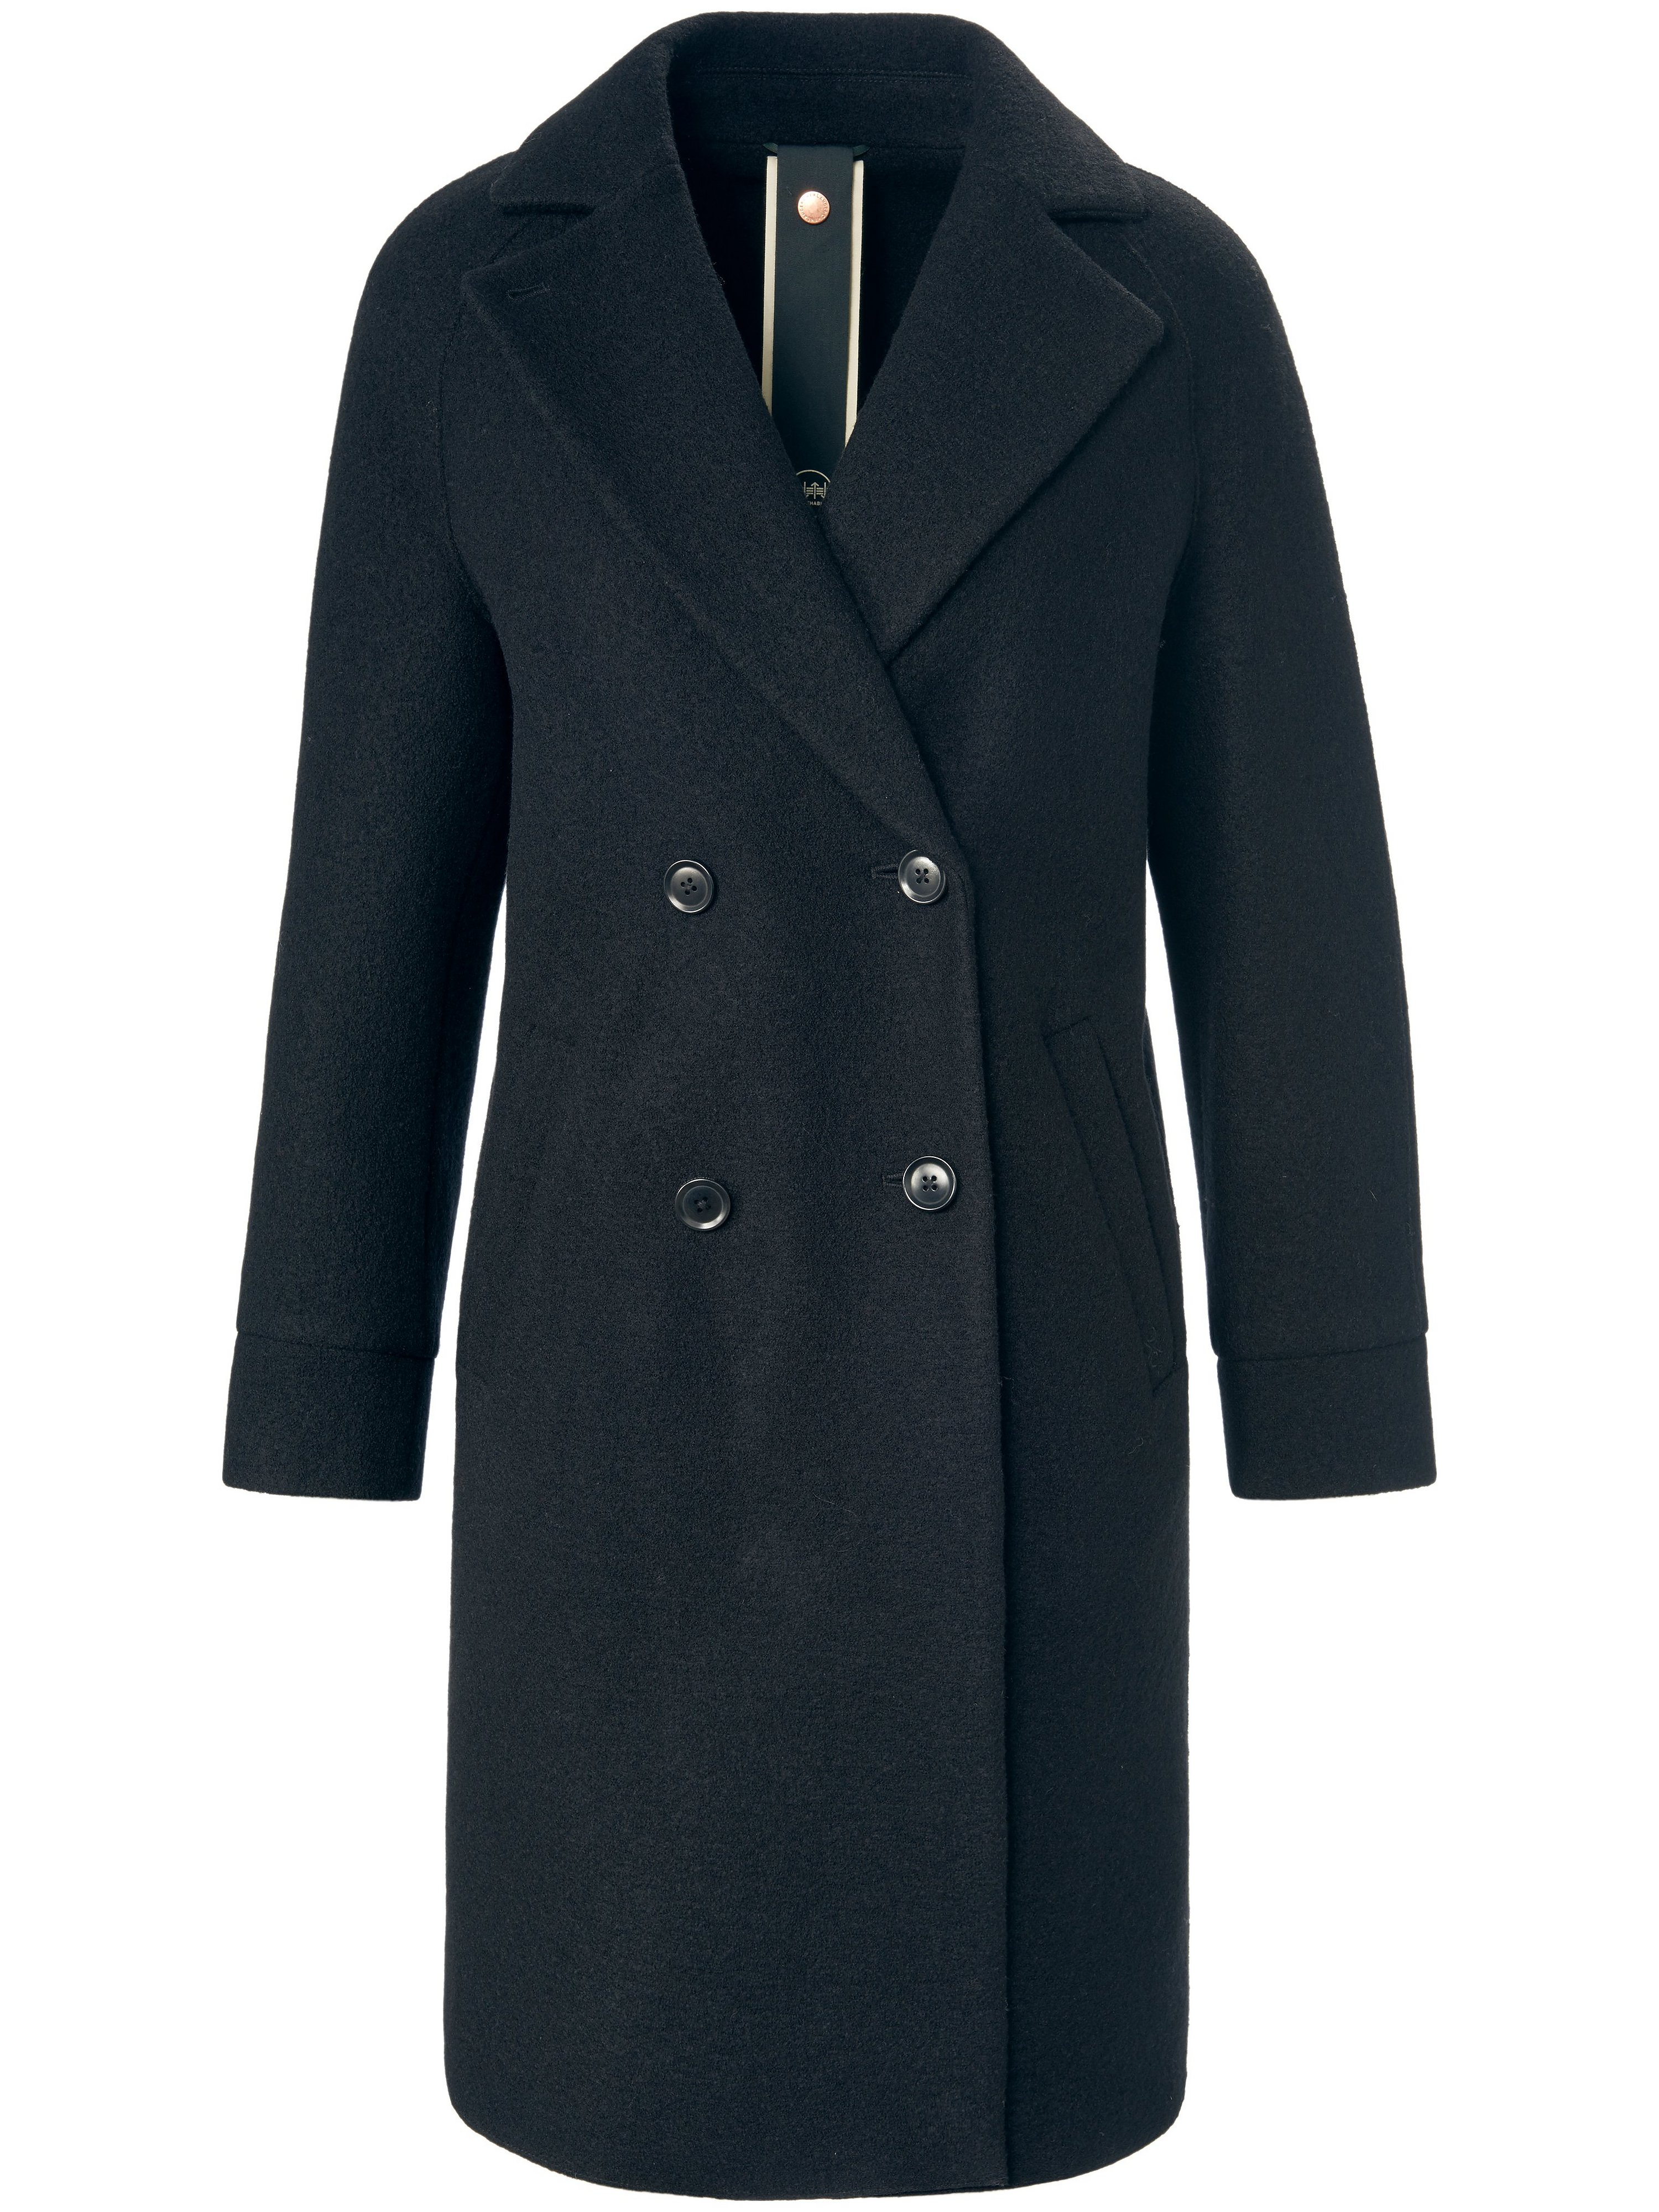 Le manteau 3/4 100% laine vierge  LangerChen noir